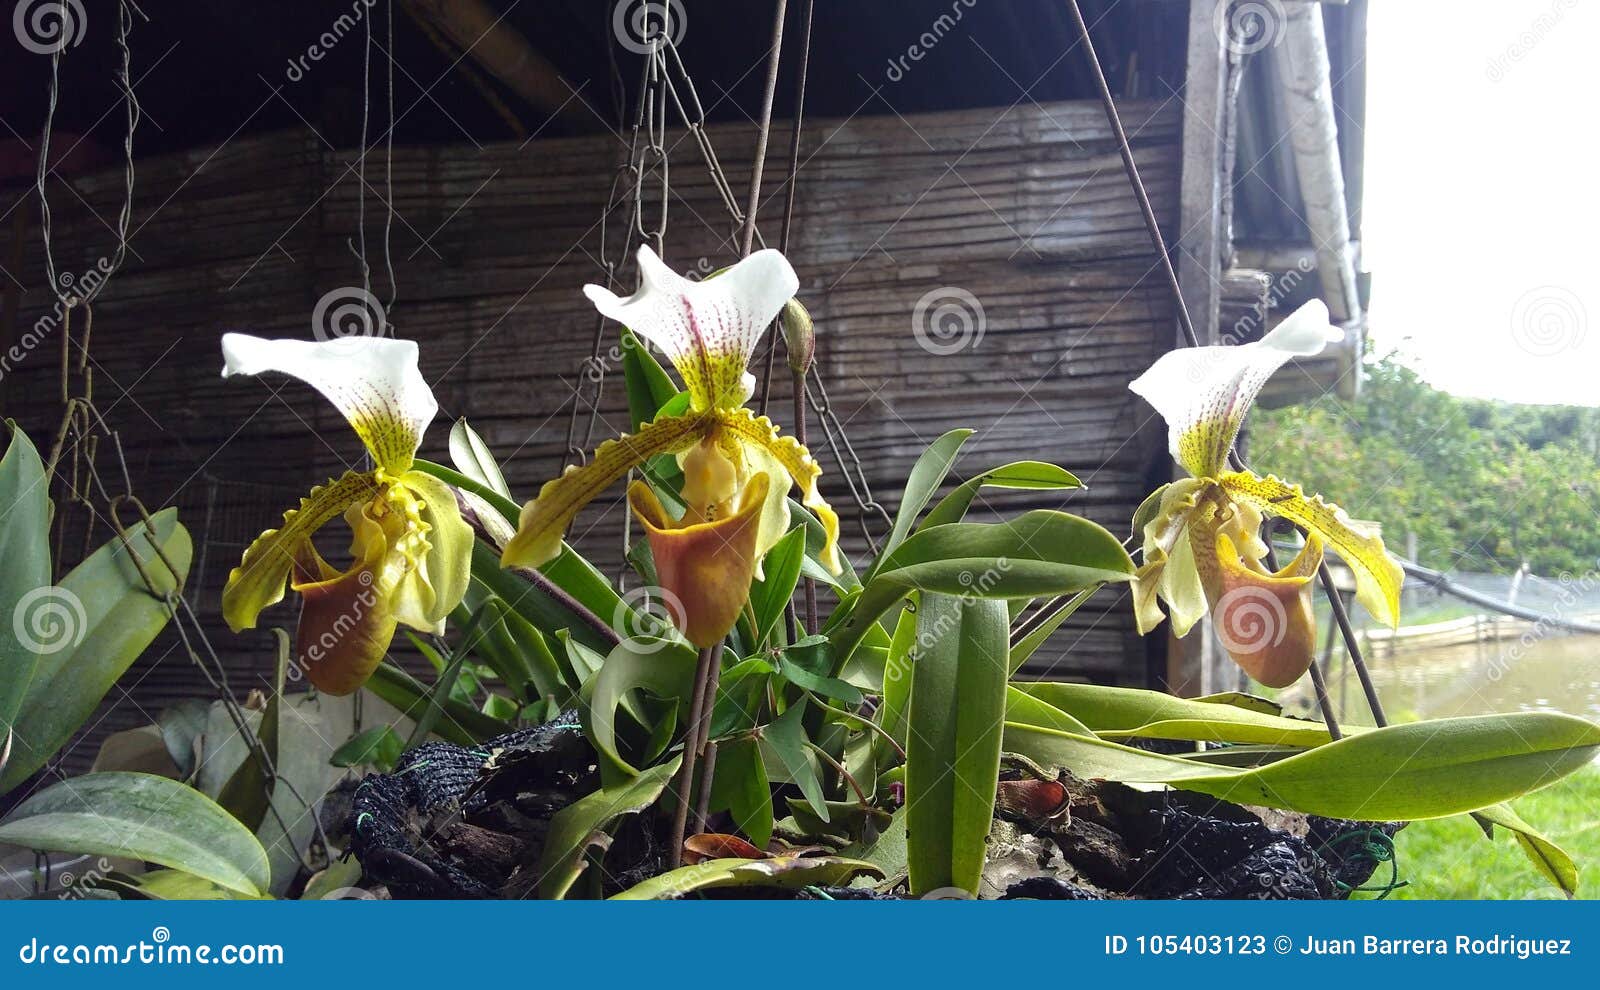 3 orquideas